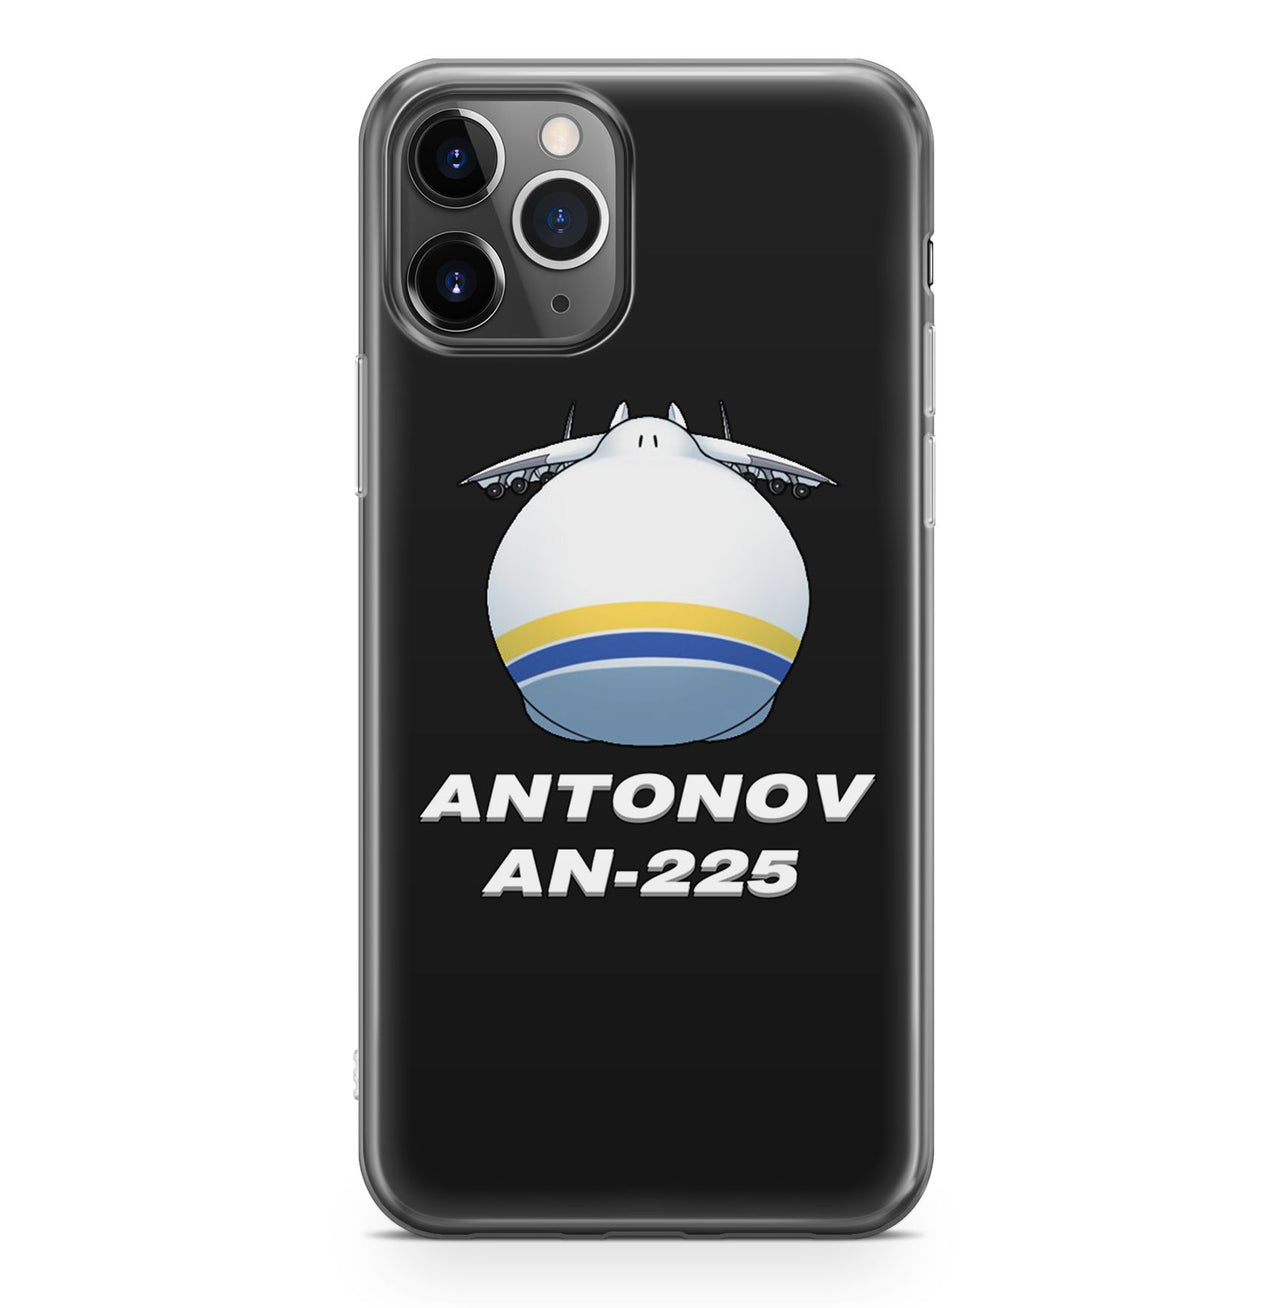 Antonov AN-225 (20) Designed iPhone Cases